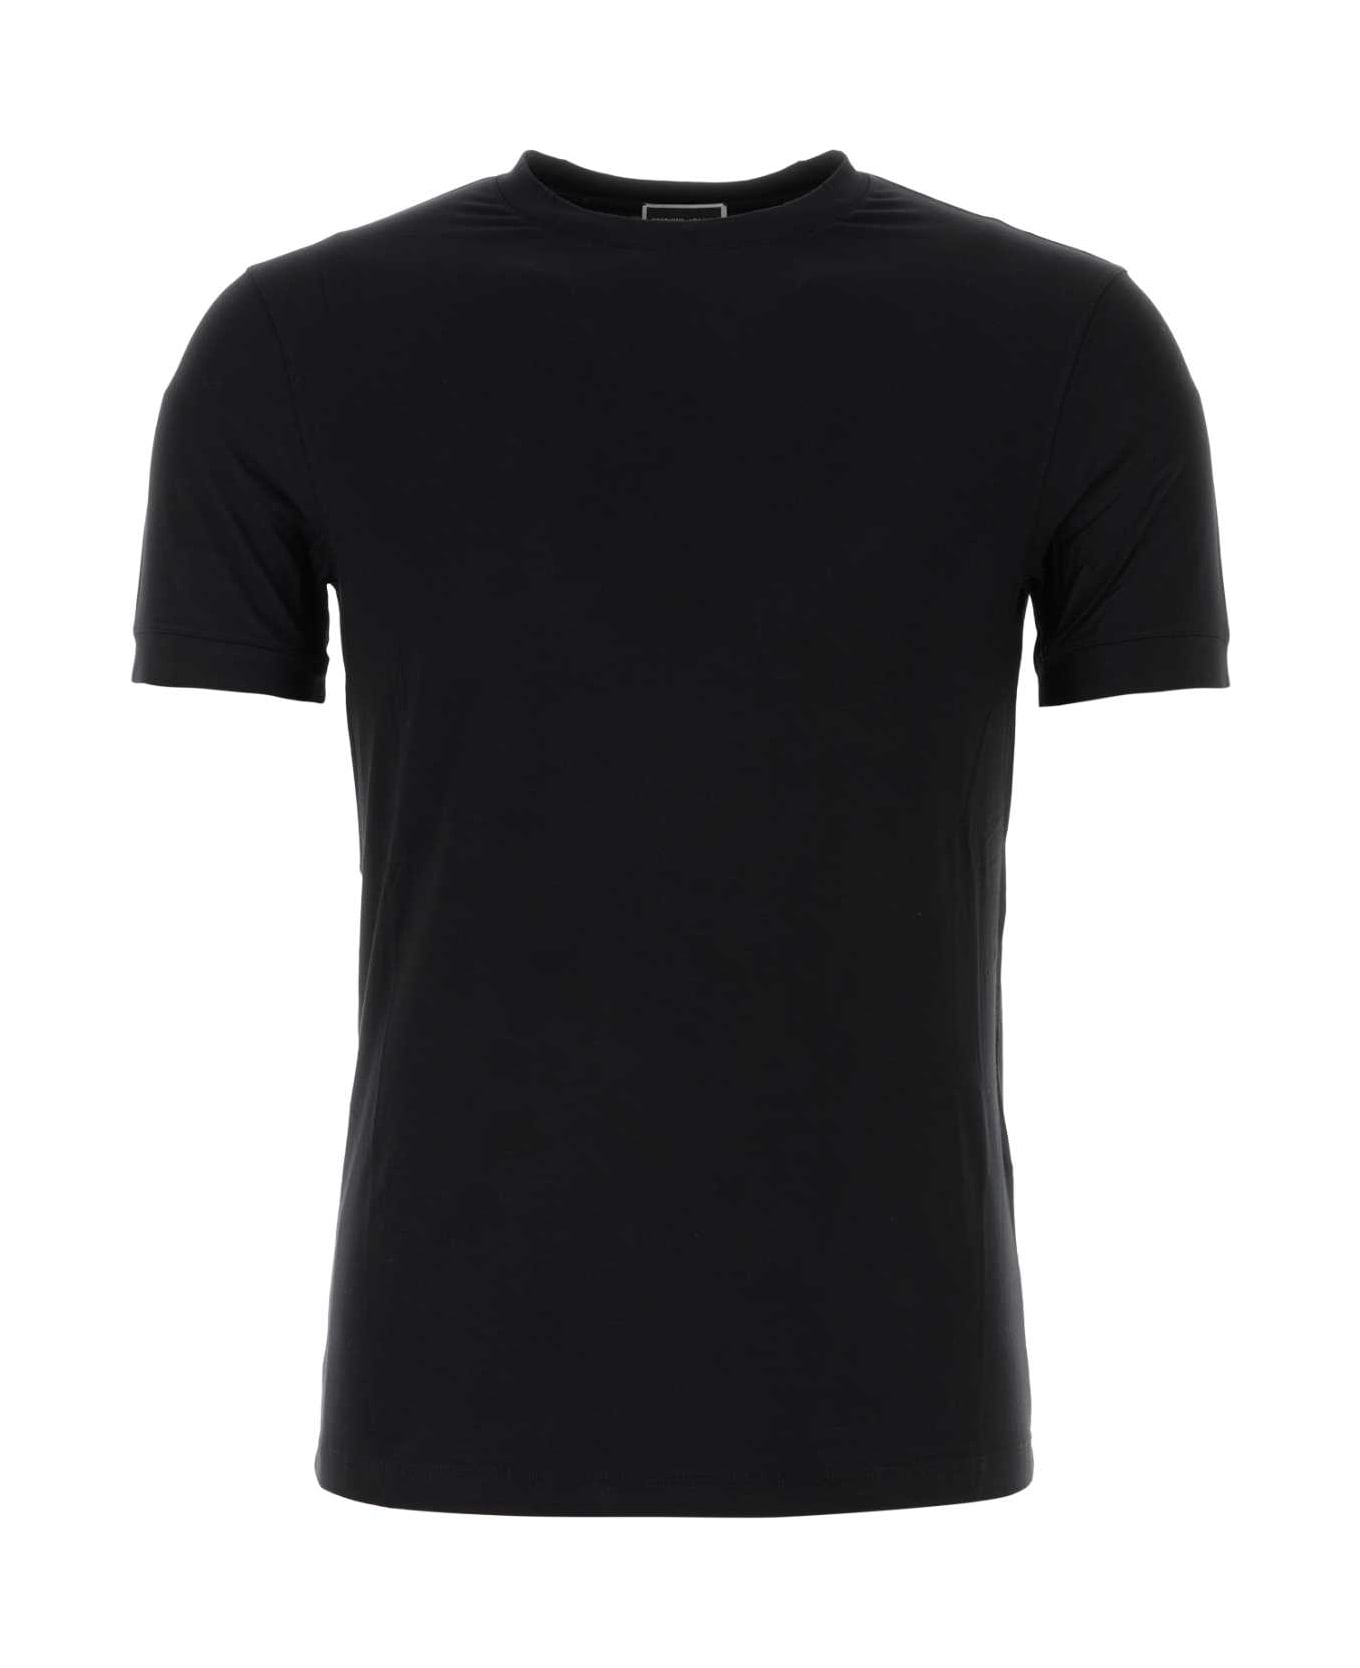 Giorgio Armani Black Stretch Viscose T-shirt - NERO